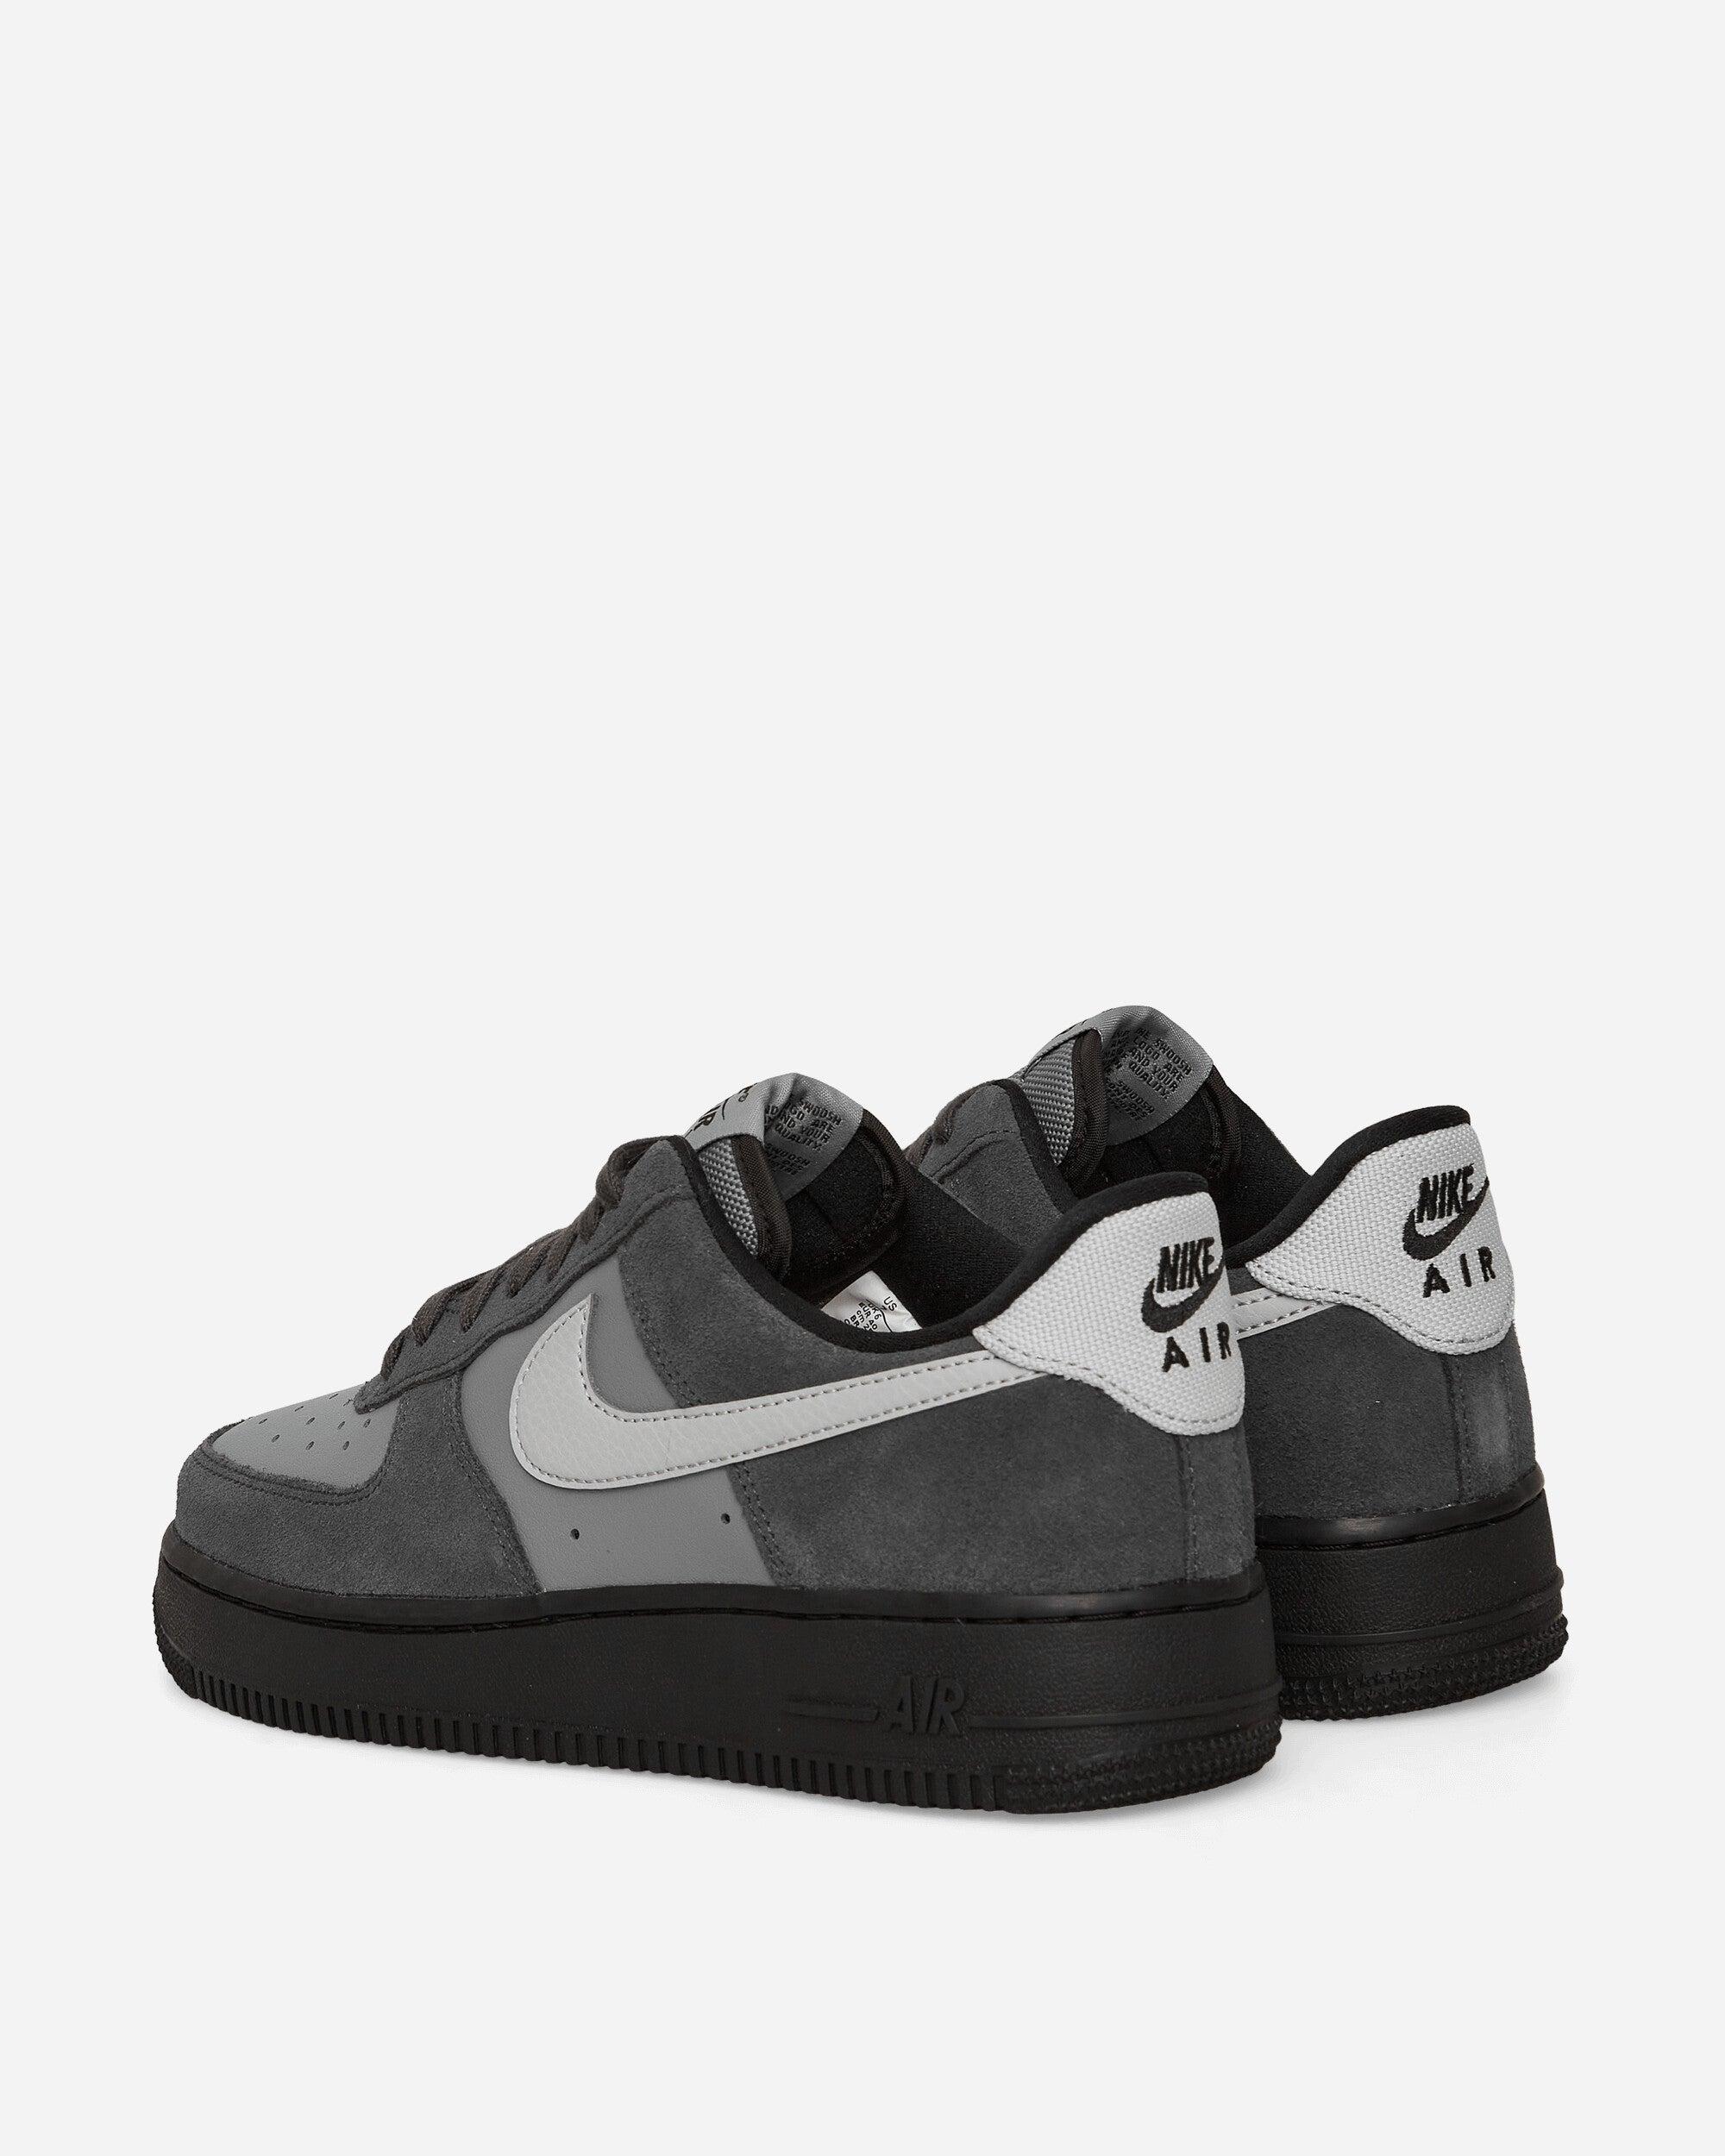 Nike Air Force 1 '07 LV8 Black/Smoke Grey/White Sneakers - Farfetch